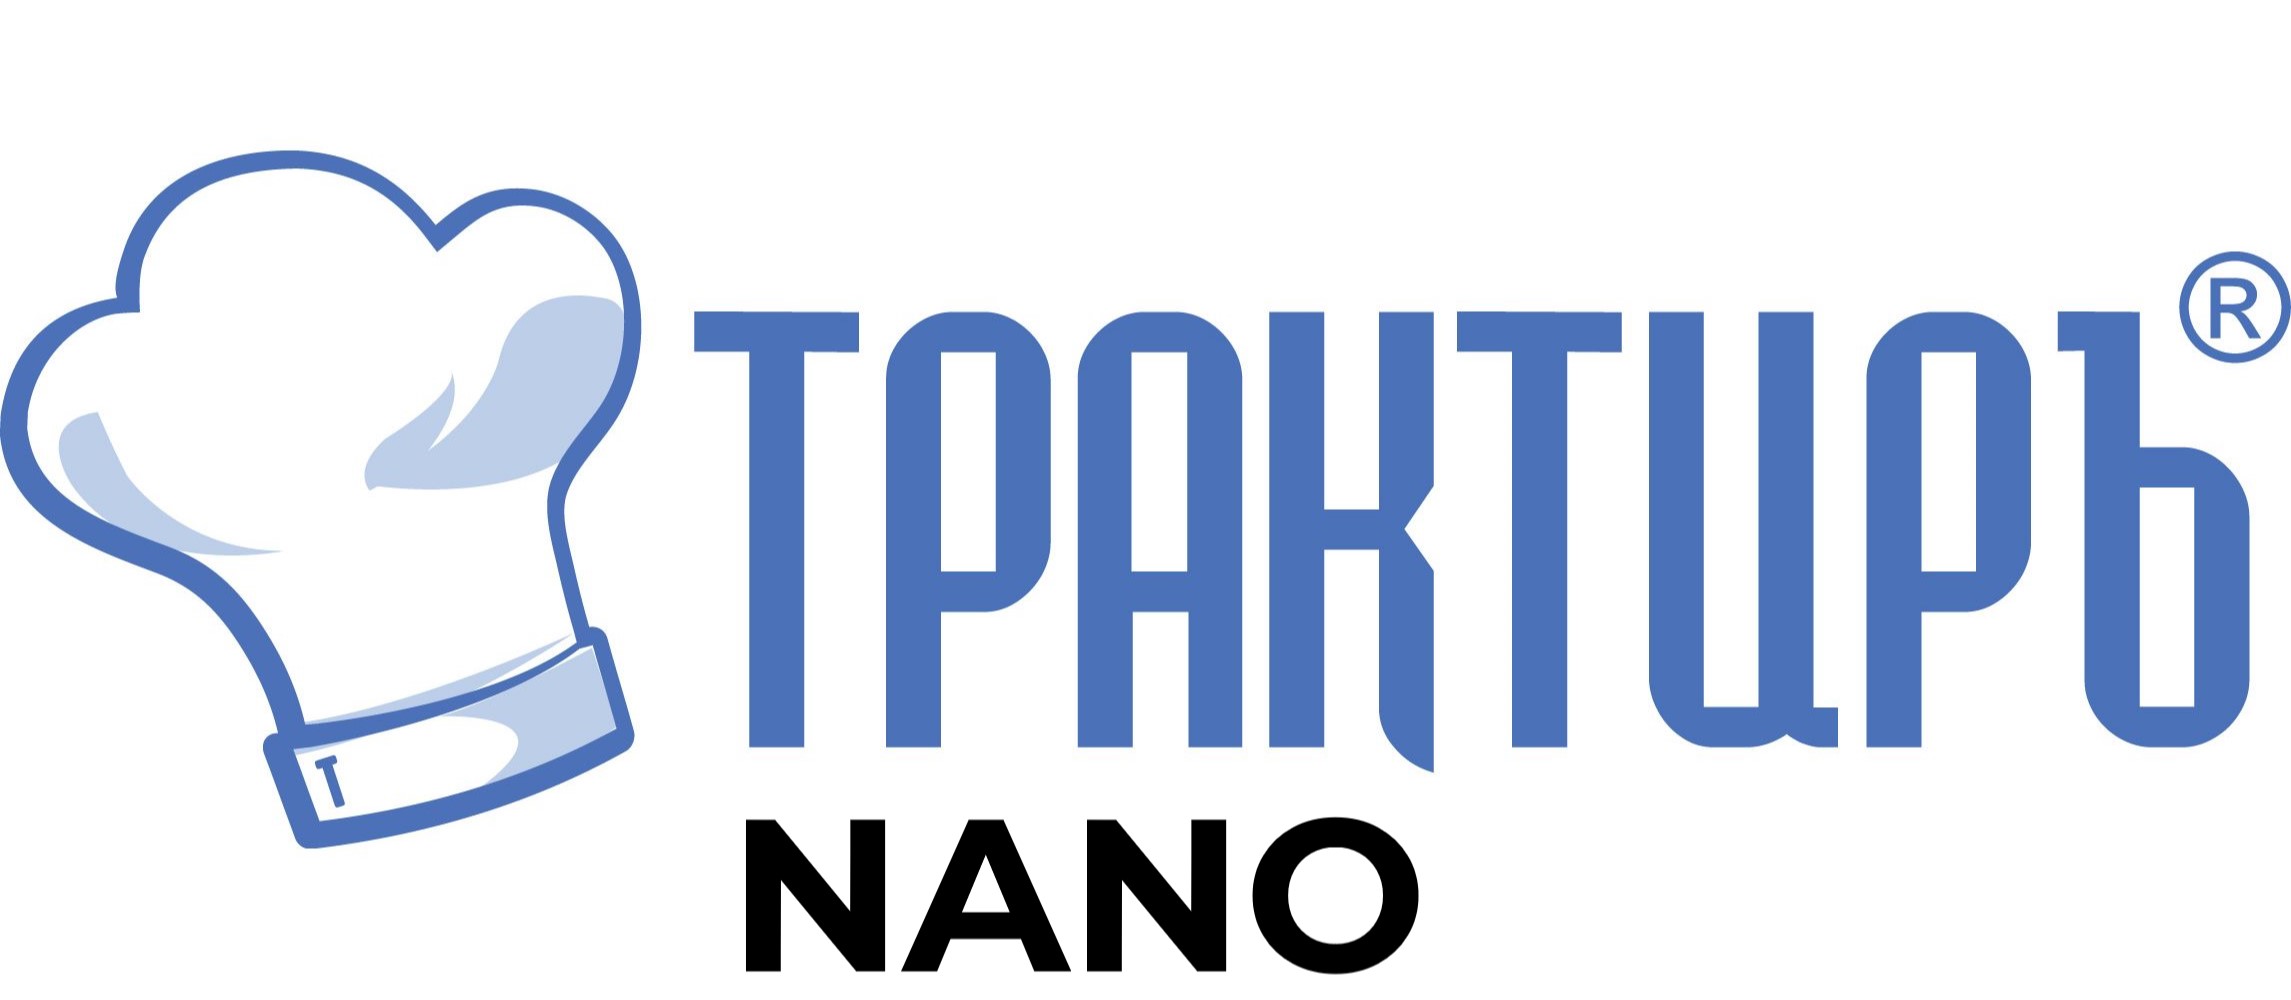 Конфигурация Трактиръ: Nano (Основная поставка) в Уфе